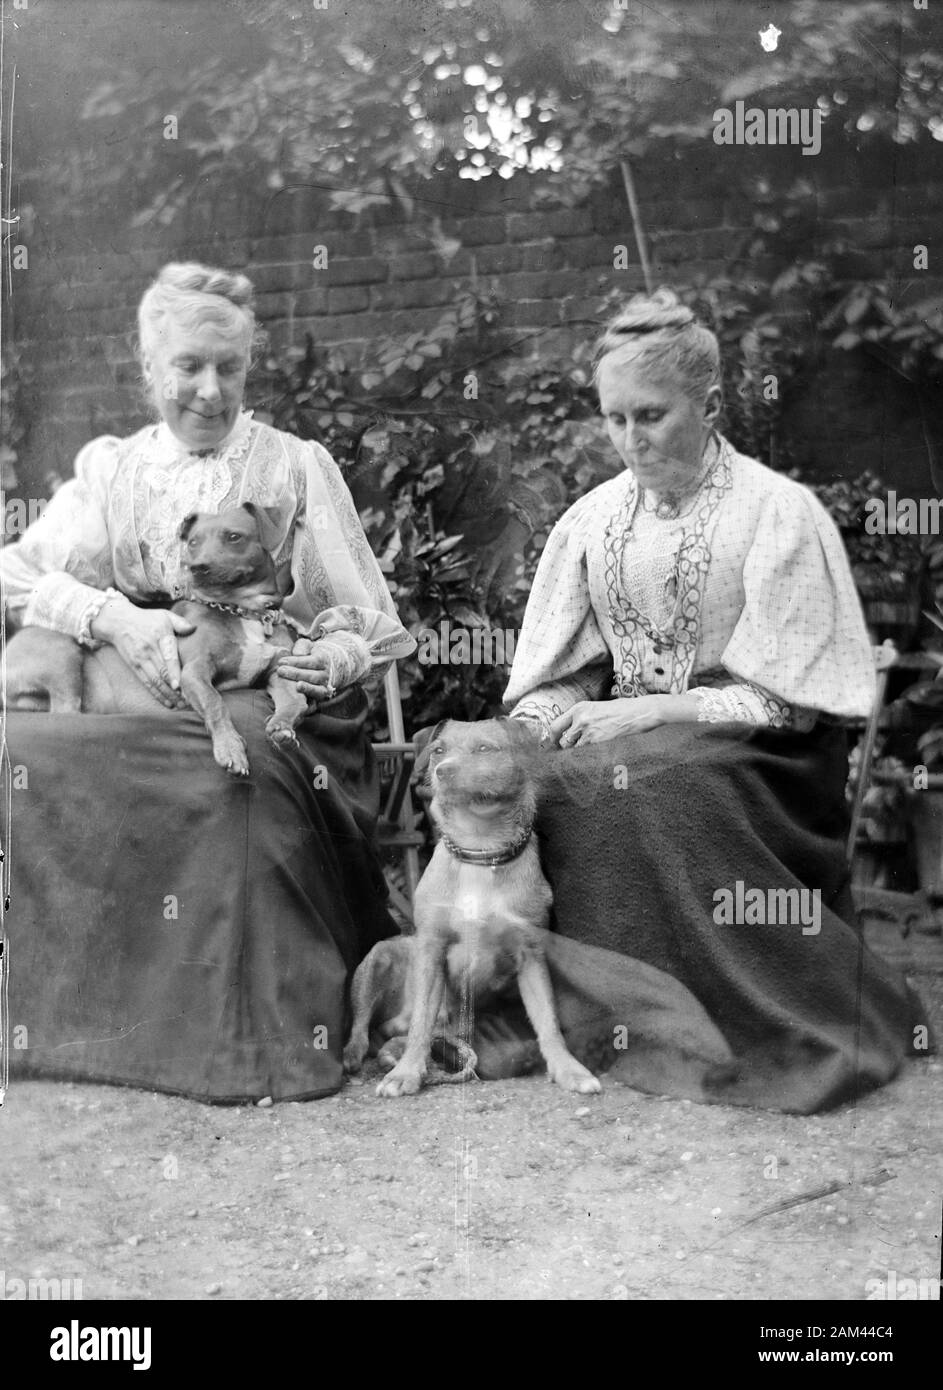 Archive photographie de l'époque édouardienne de deux dames avec des chiens d'animal de compagnie. Scanné directement à partir de la plaque négative en verre. Vers 1910 Banque D'Images